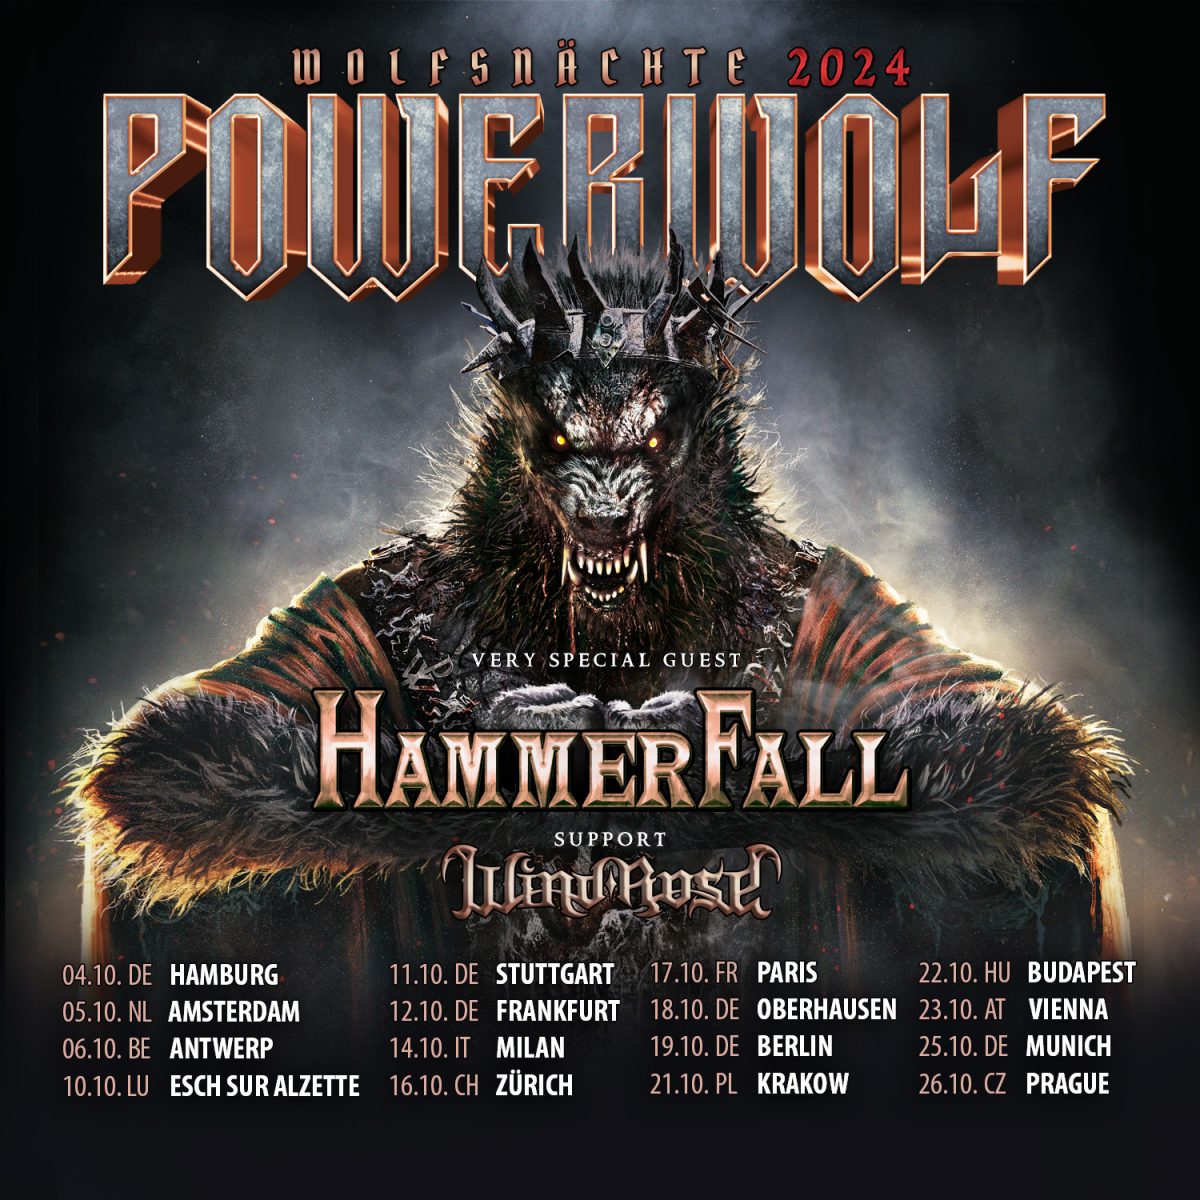 Powerwolf: Wolfsnächte 2024 - Tickets in unserem Shop verfügbar